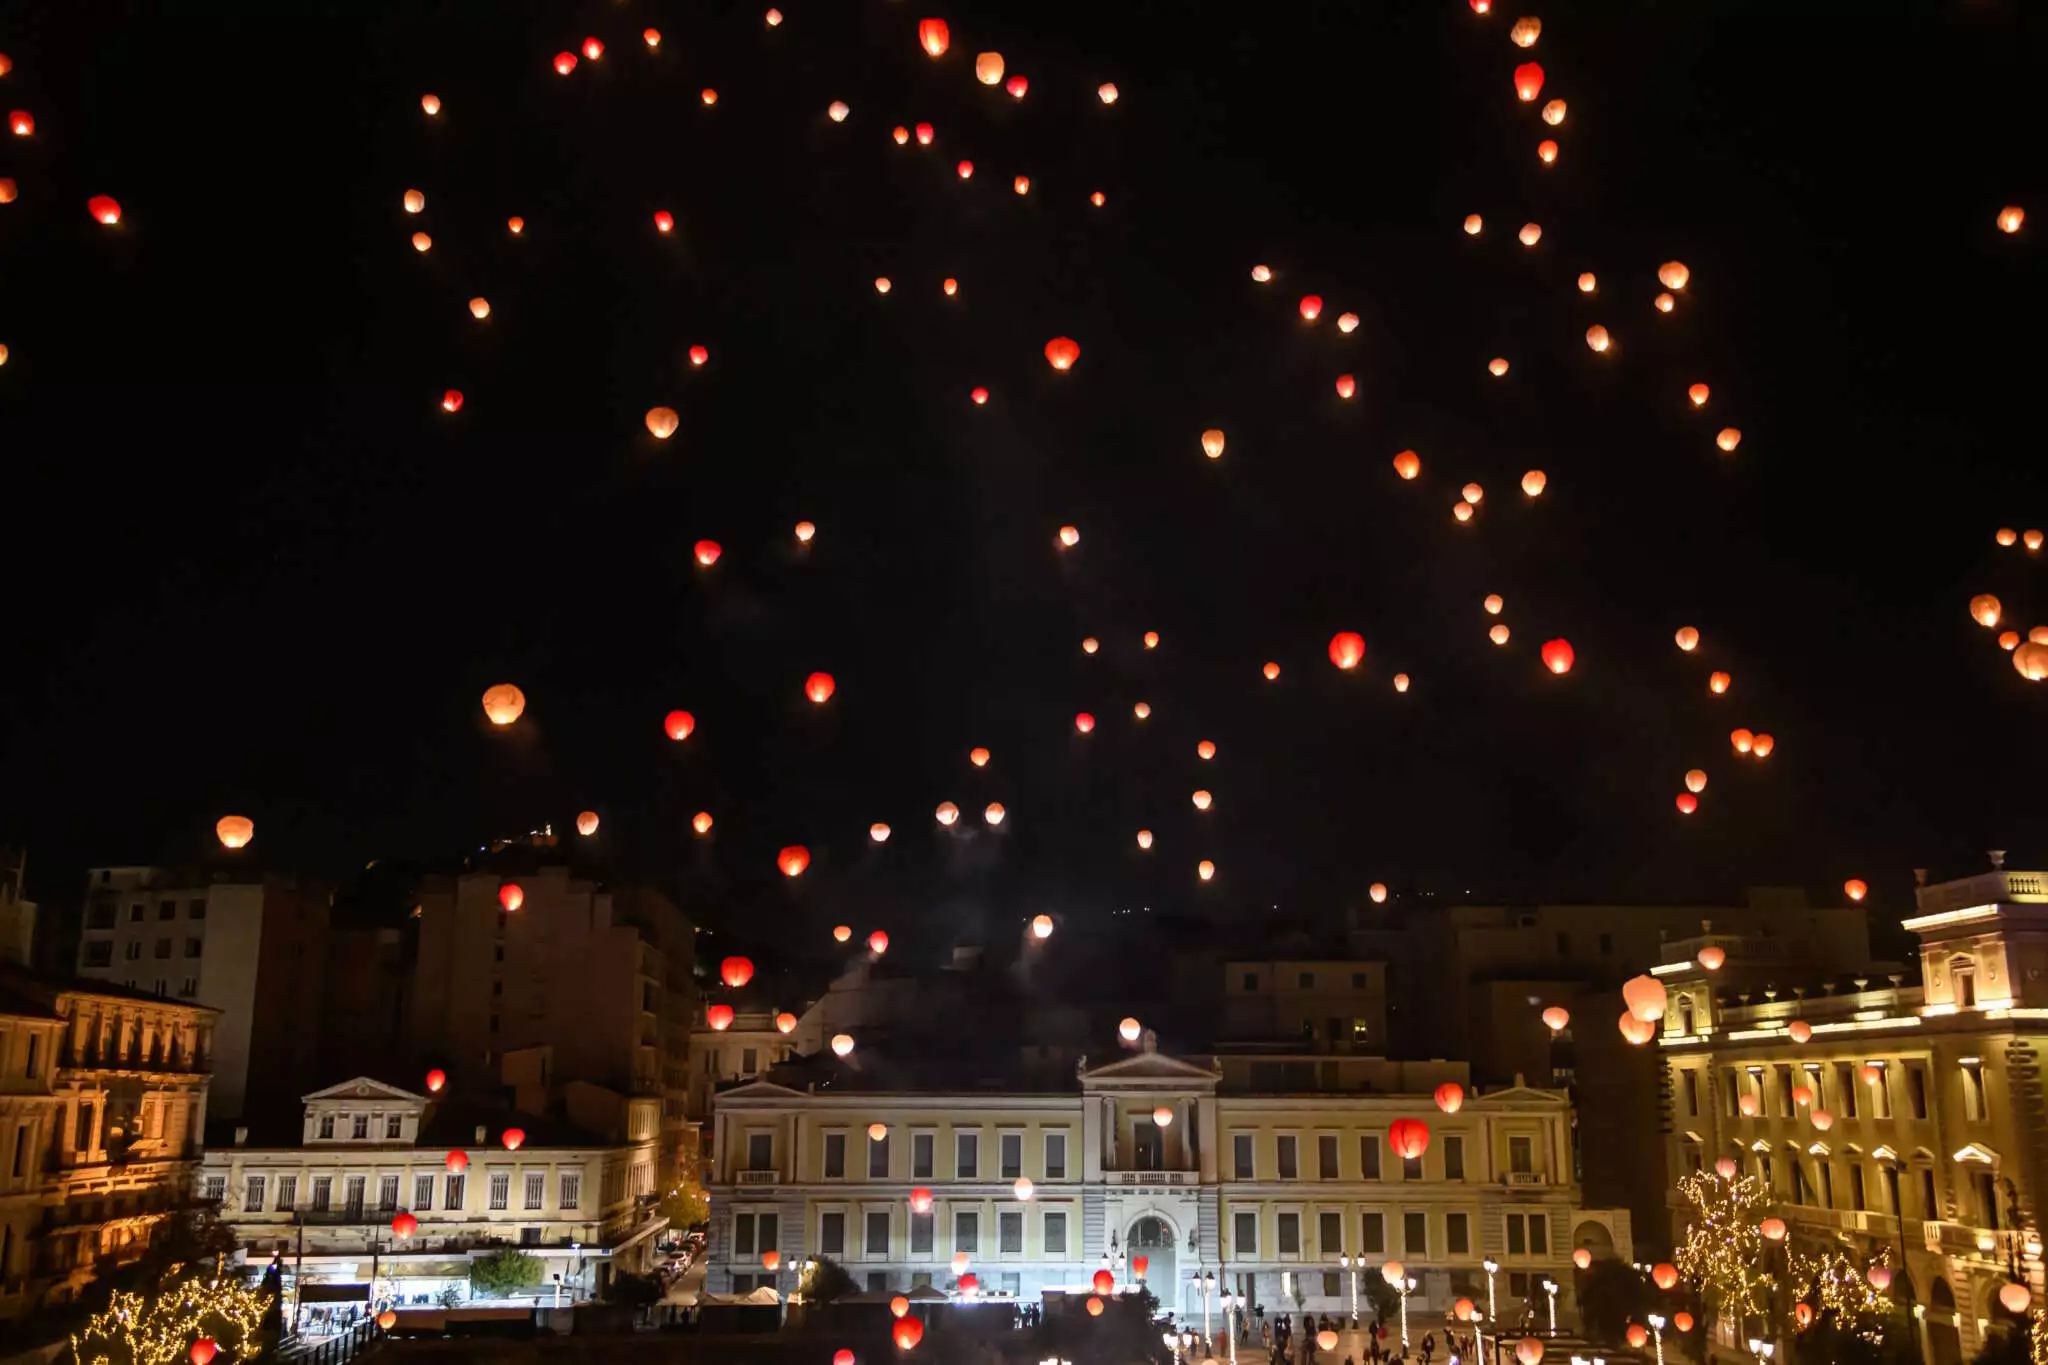 Δήμος Αθηναίων: Η «Νύχτα των Ευχών» από την Πλατεία Κοτζιά θα φωτίσει και φέτος τα Χριστούγεννα